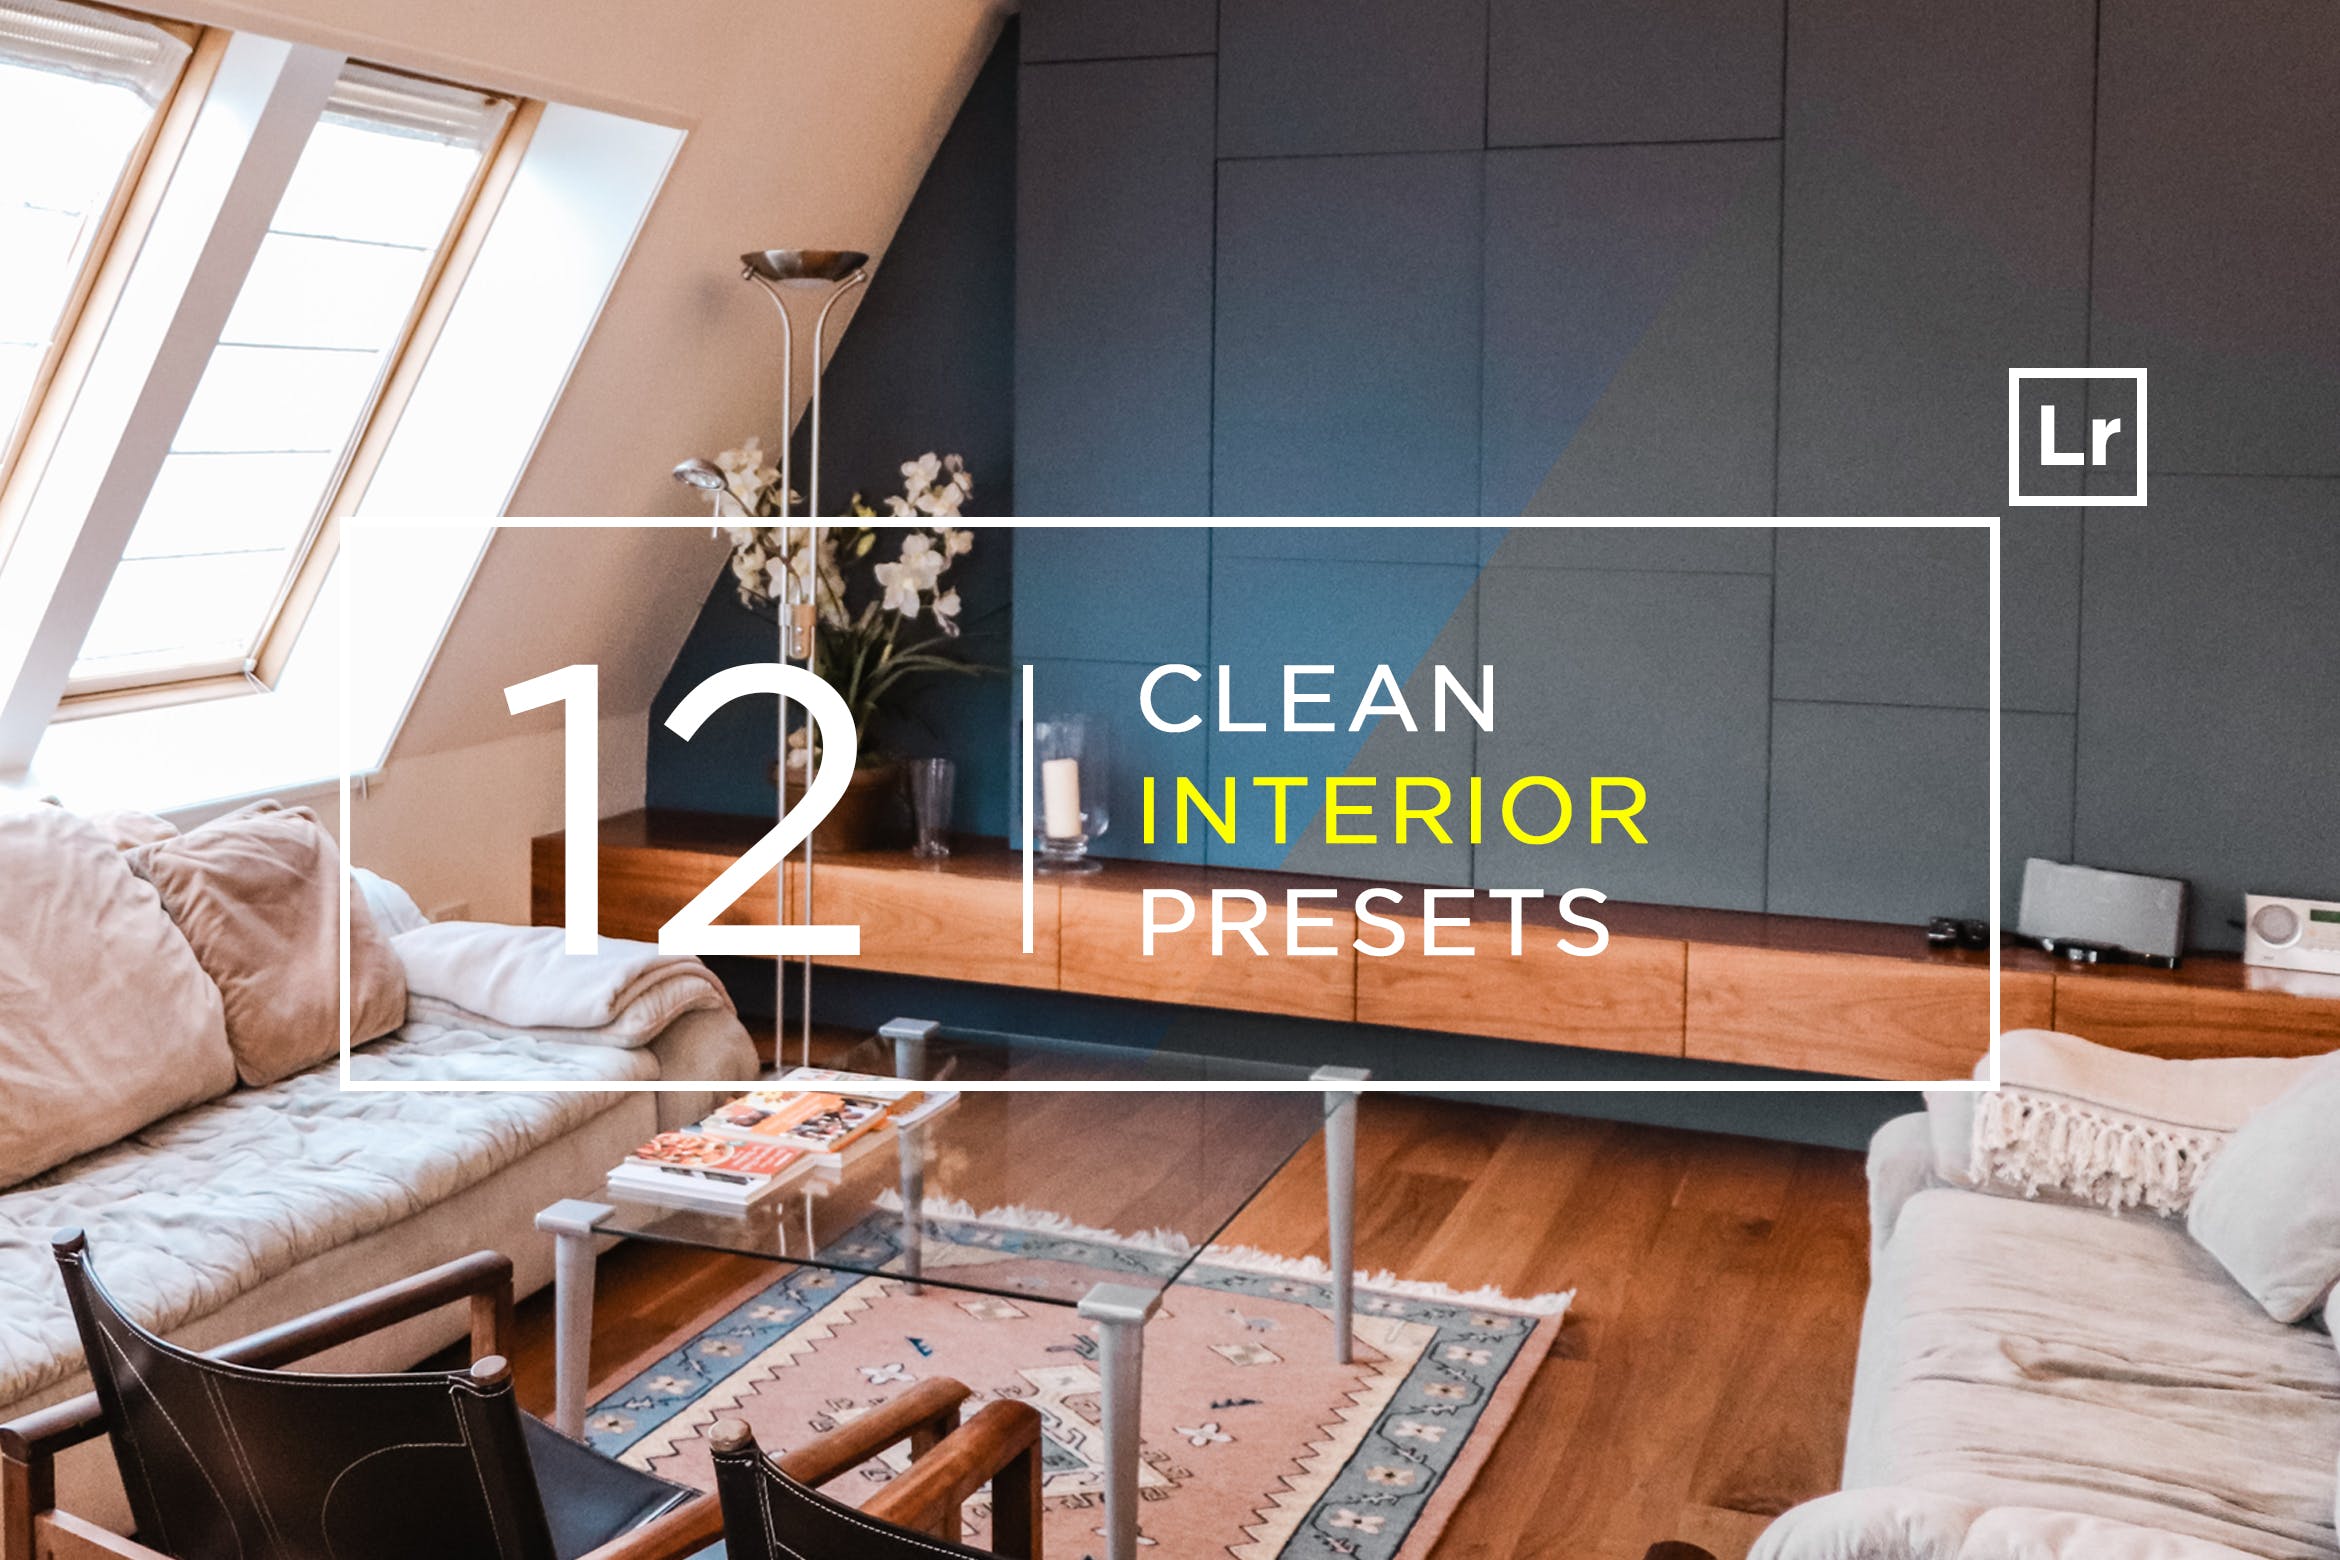 12款室内摄影必备的调色滤镜非凡图库精选LR预设 12 Clean Interior Lightroom Presets插图